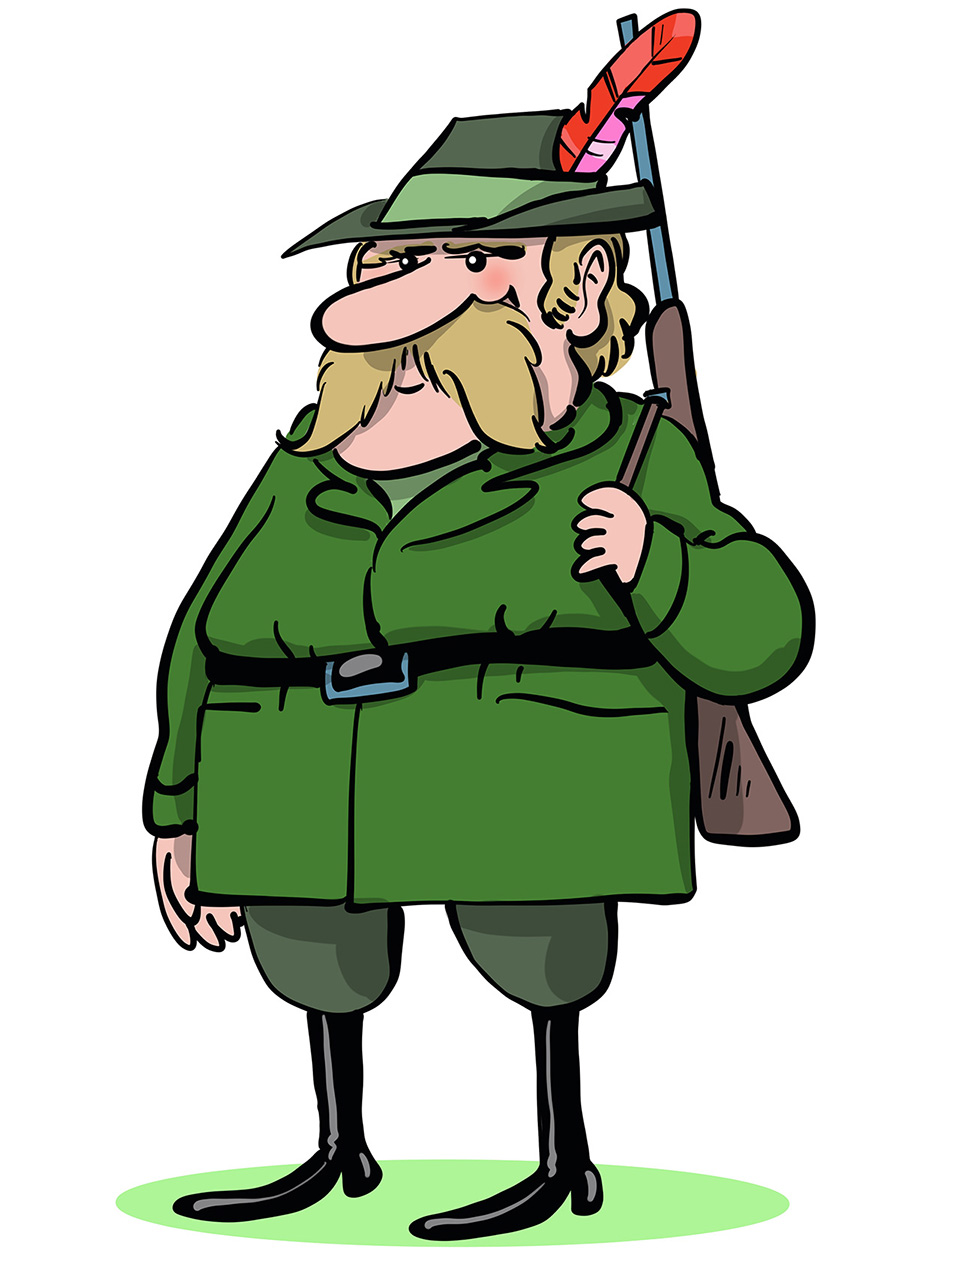 Brkati lovac krupnije građe odjeven u zelenu lovačku odoru i s puškom na lijevom ramenu.